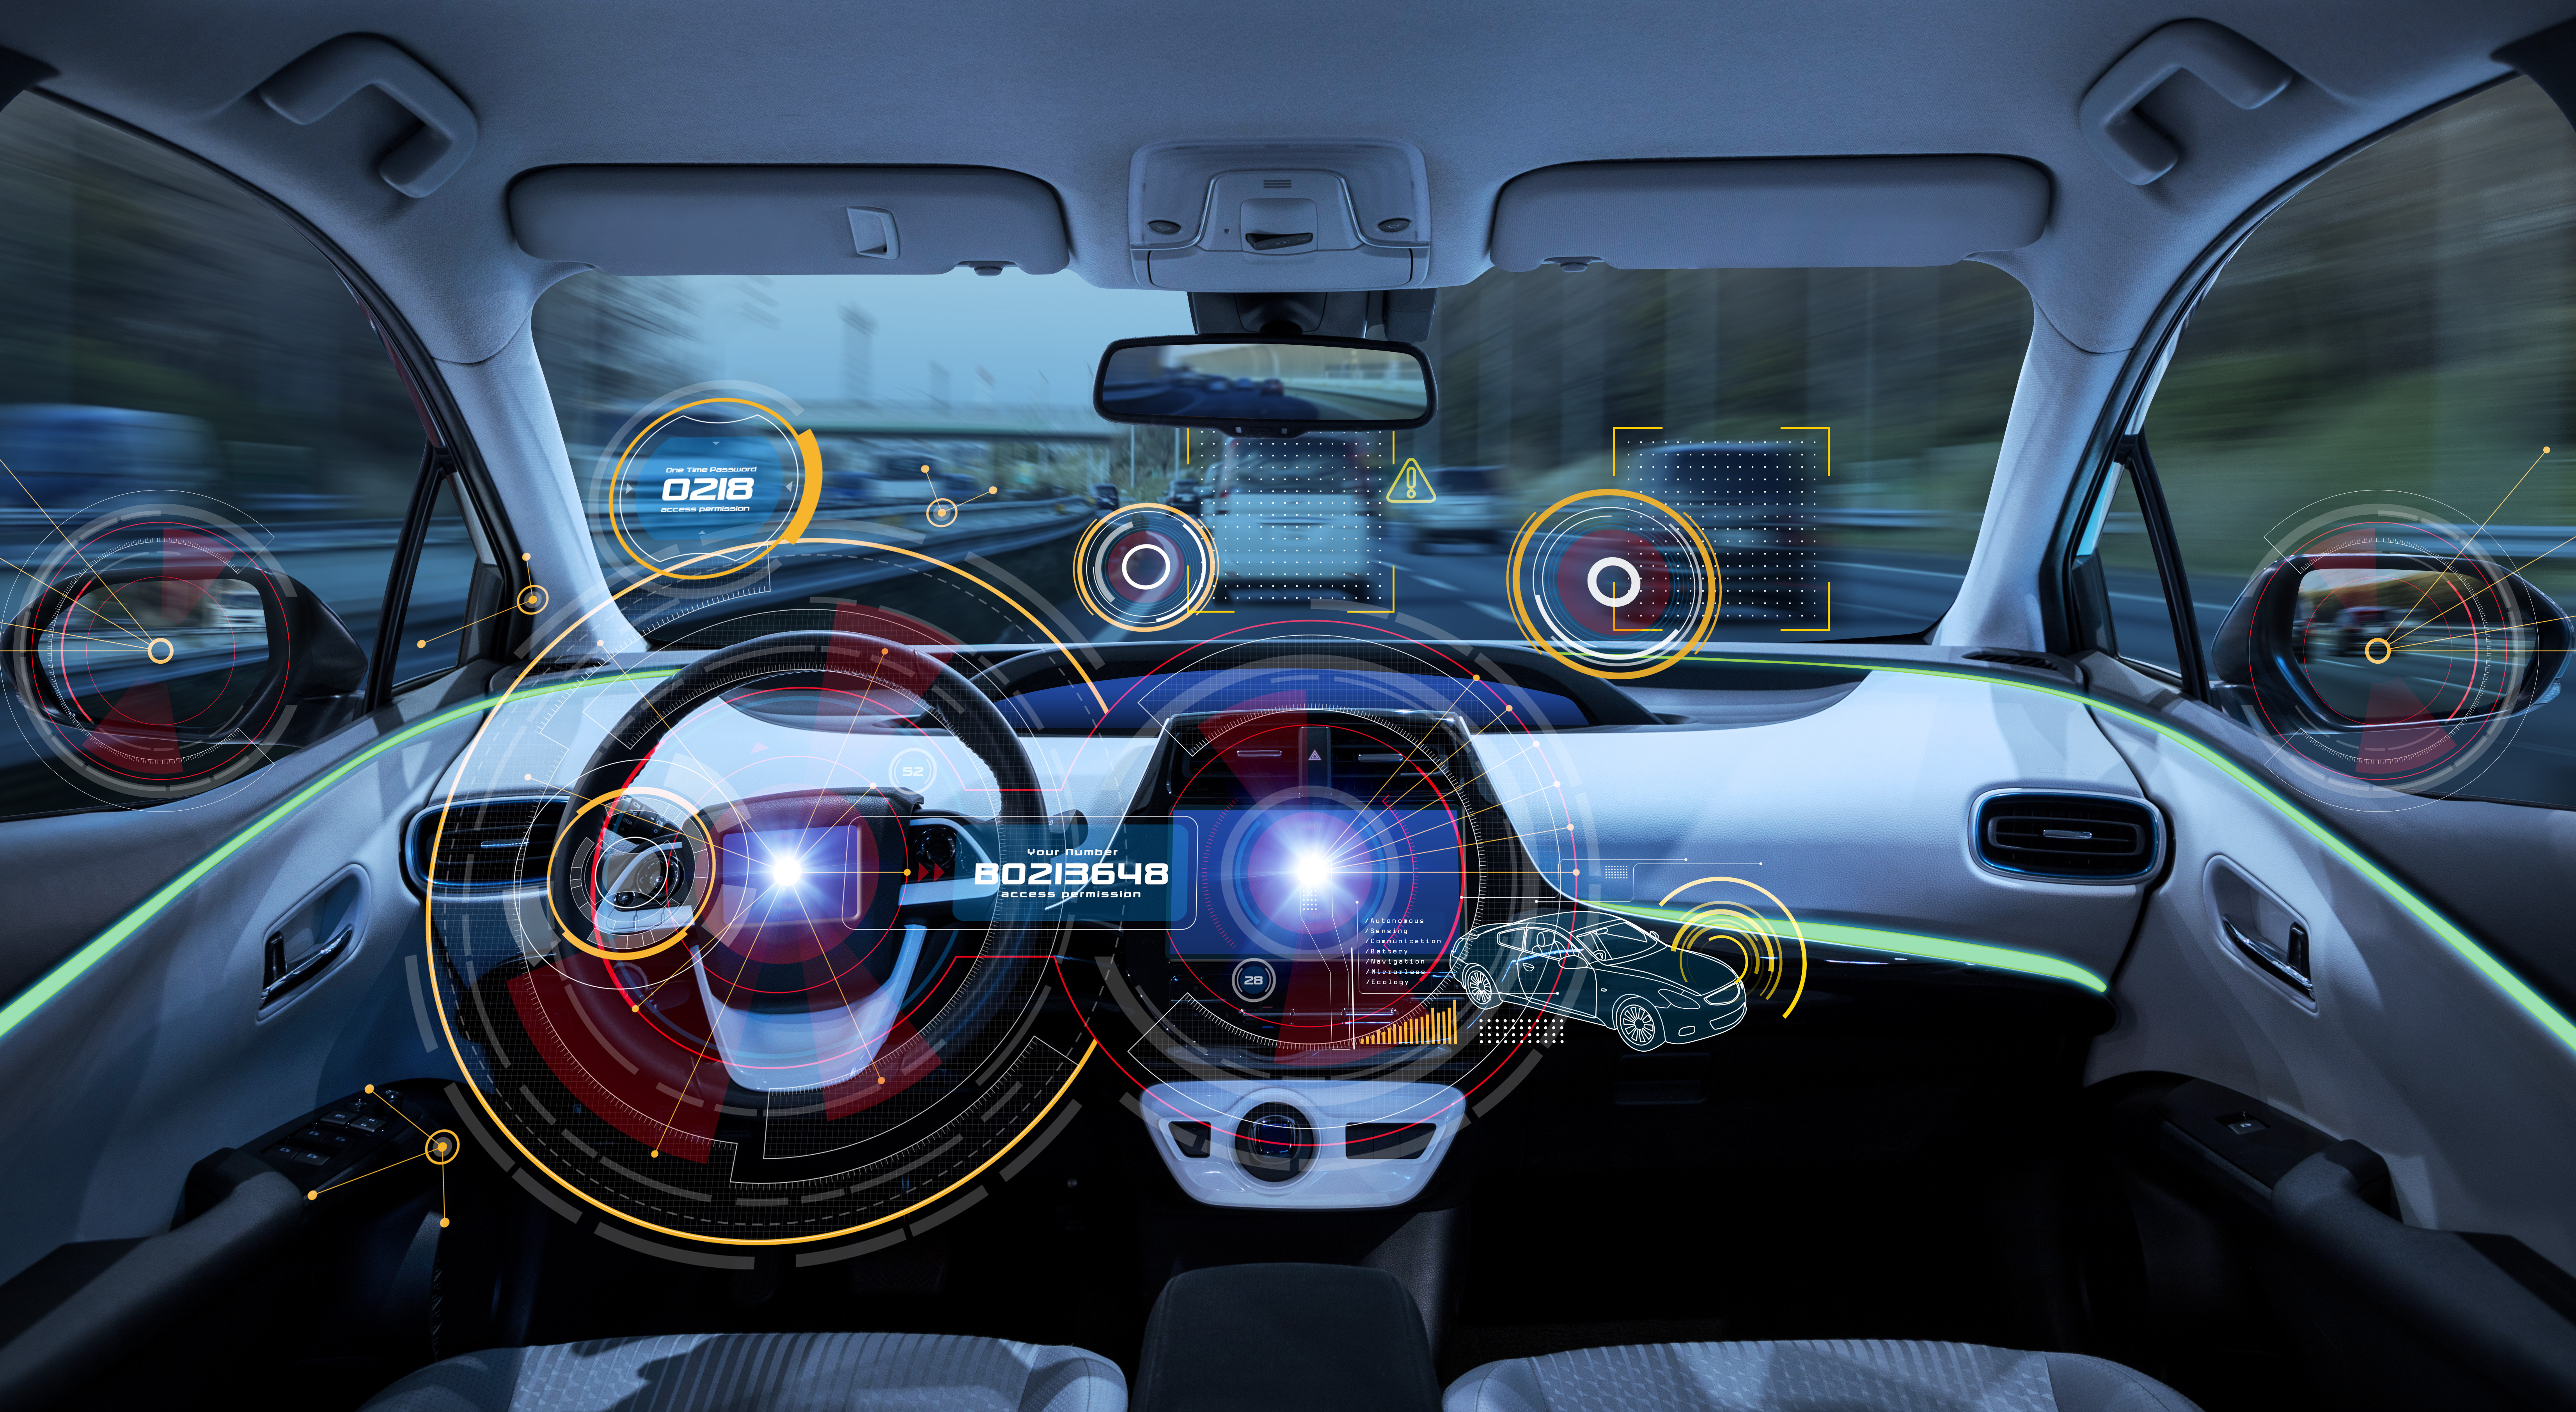 ถึงยุครถยนต์ไฟฟ้าหรือยัง? วิเคราะห์ Data Insights ตลาด EV โลก